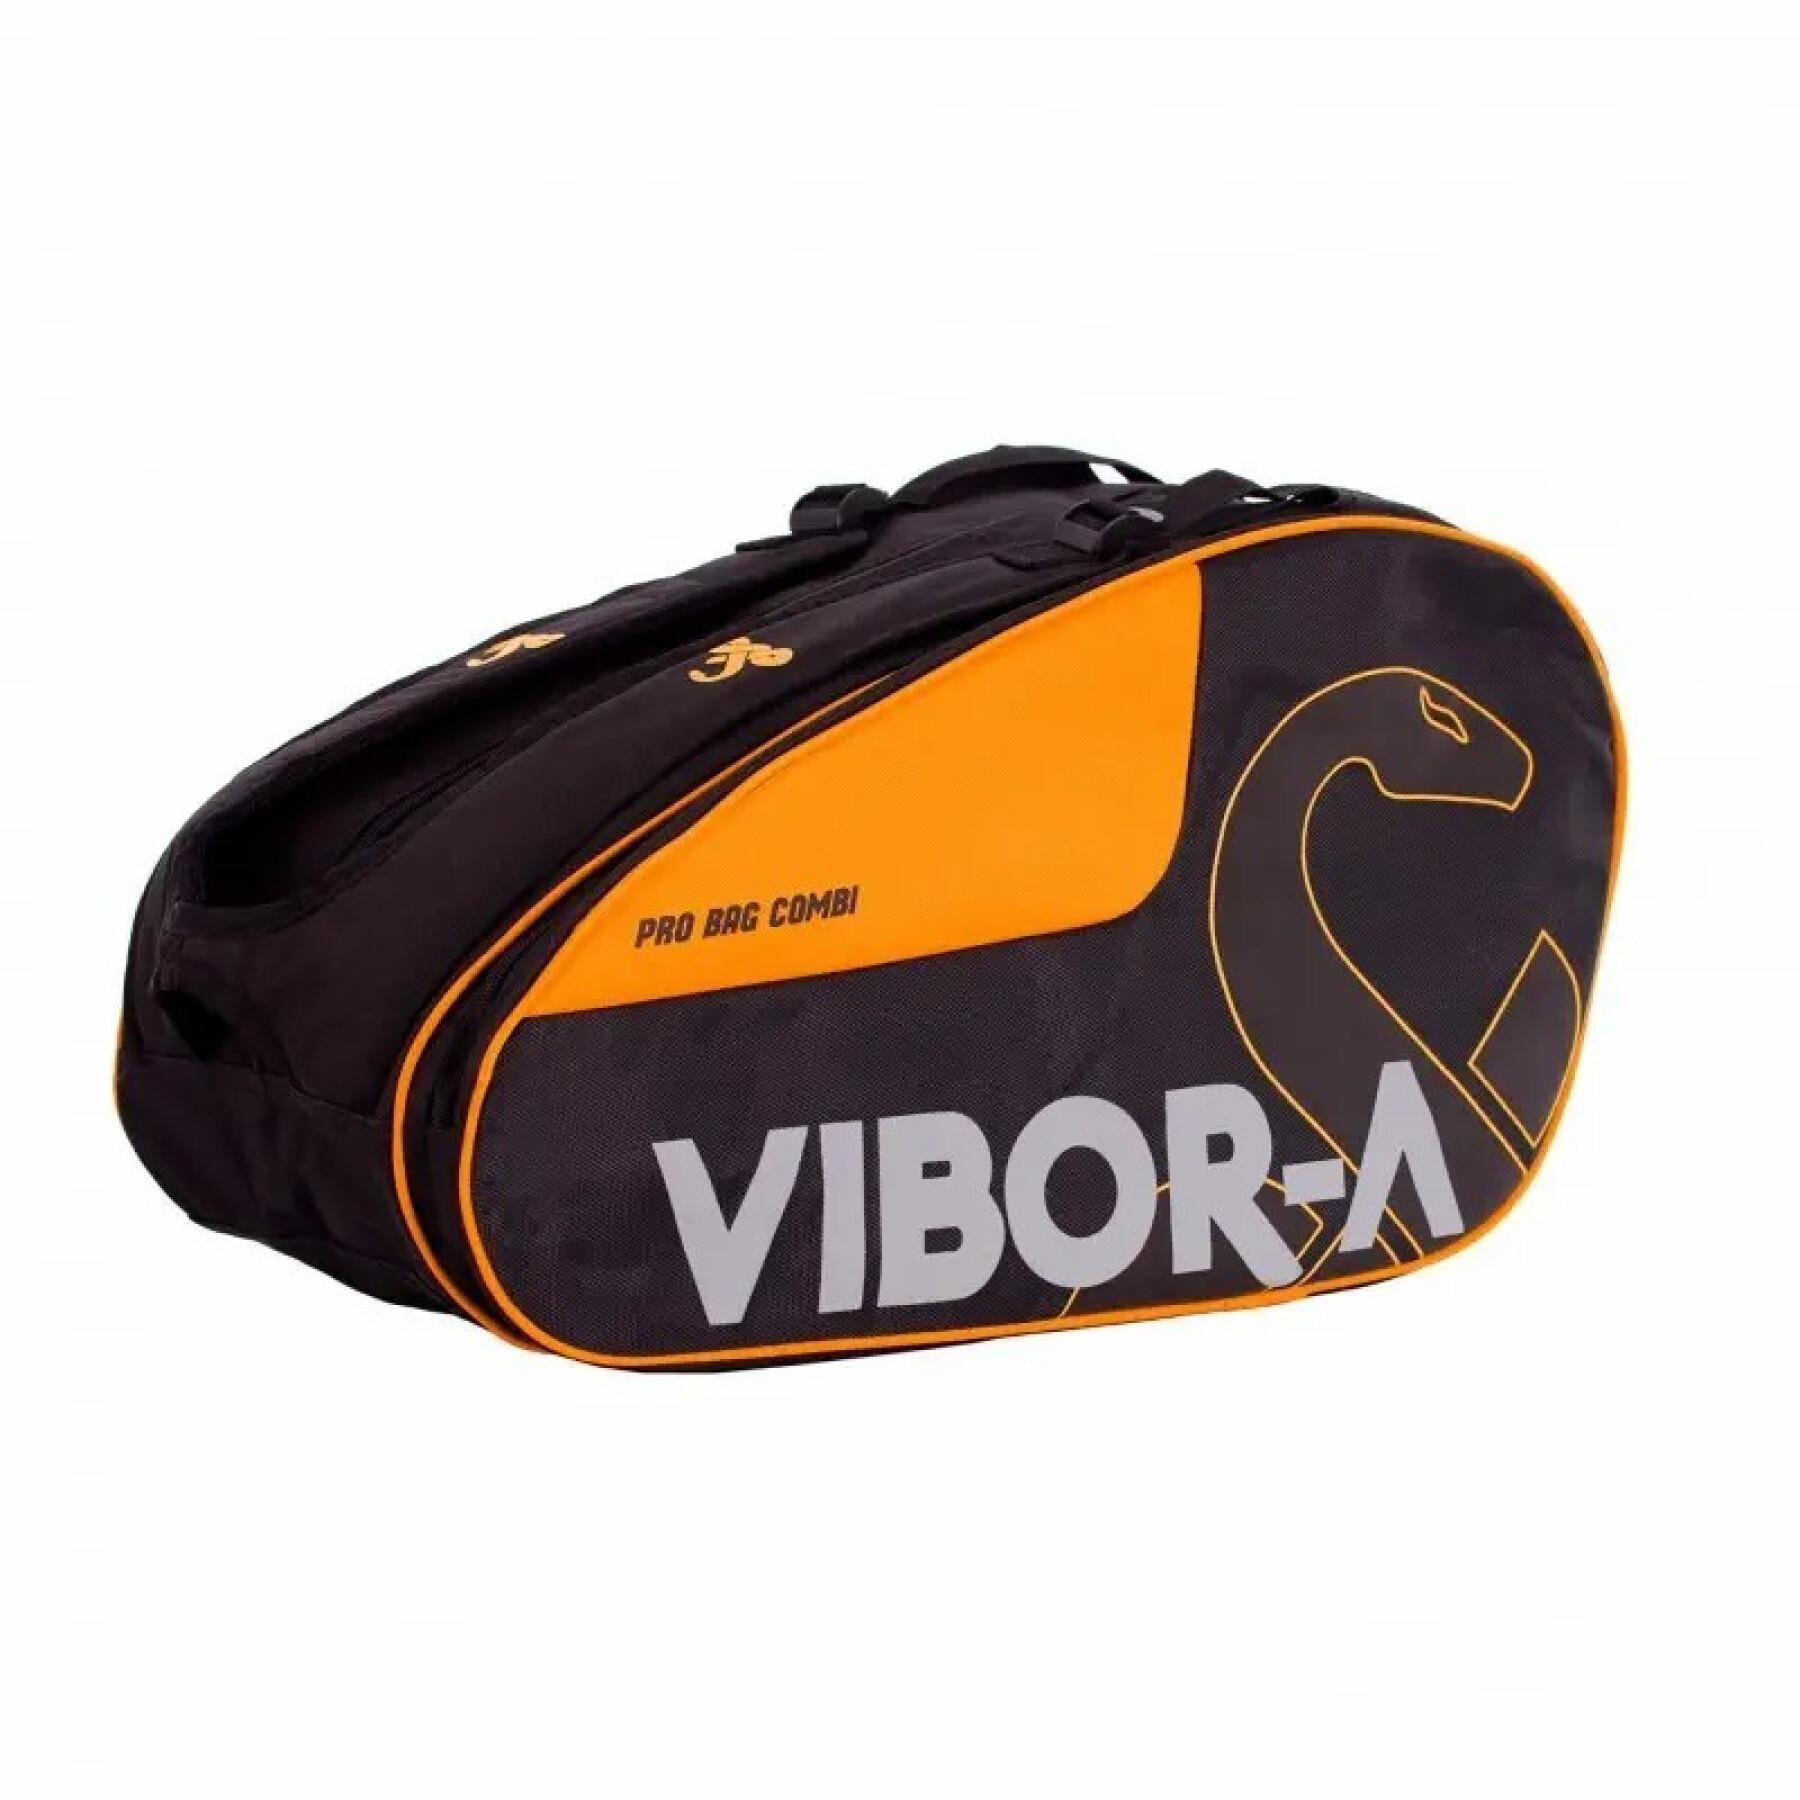 Padel racket bag Vibora Vibor-A Pro Combi